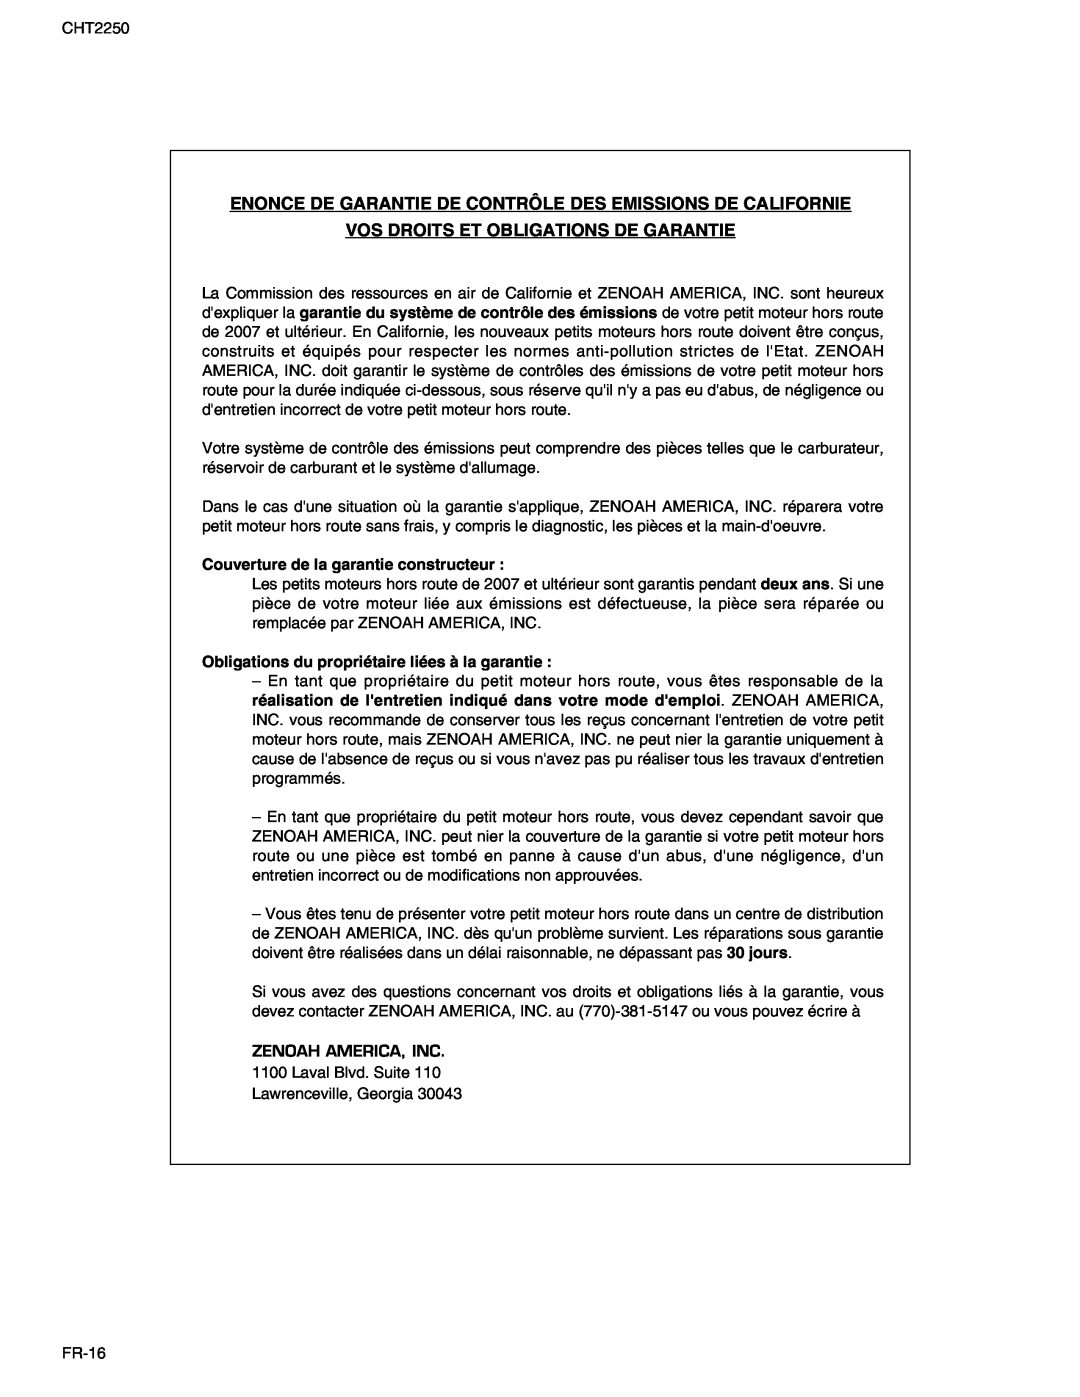 RedMax CHT2250 manual Enonce De Garantie De Contrôle Des Emissions De Californie, Vos Droits Et Obligations De Garantie 